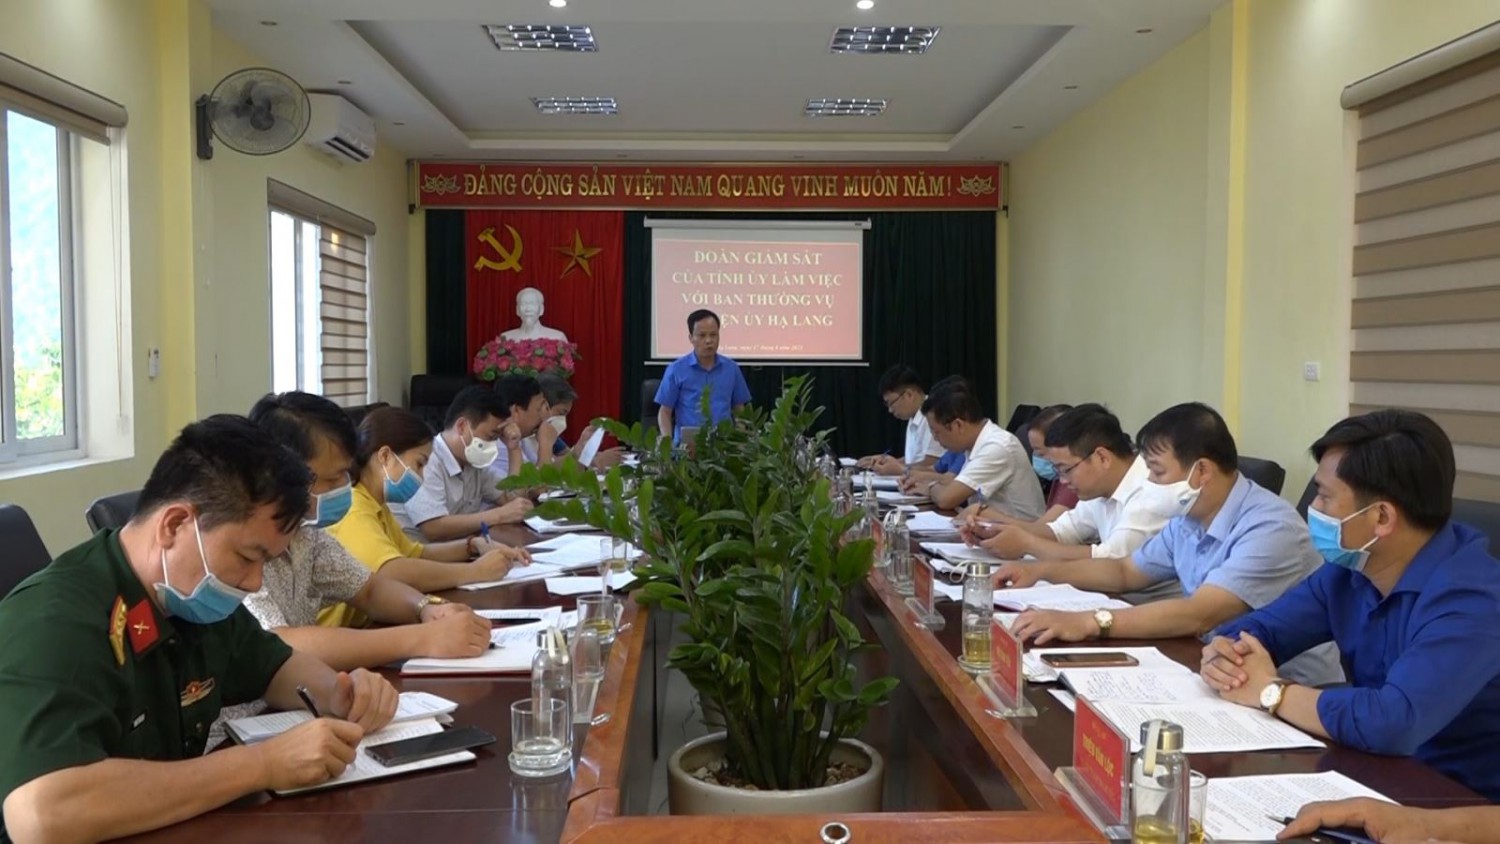 Đồng chí Nông Thanh Tùng, Ủy viên Ban Thường vụ Tỉnh ủy, Phó Chủ tịch HĐND tỉnh phát biểu kết luận buổi làm việc.